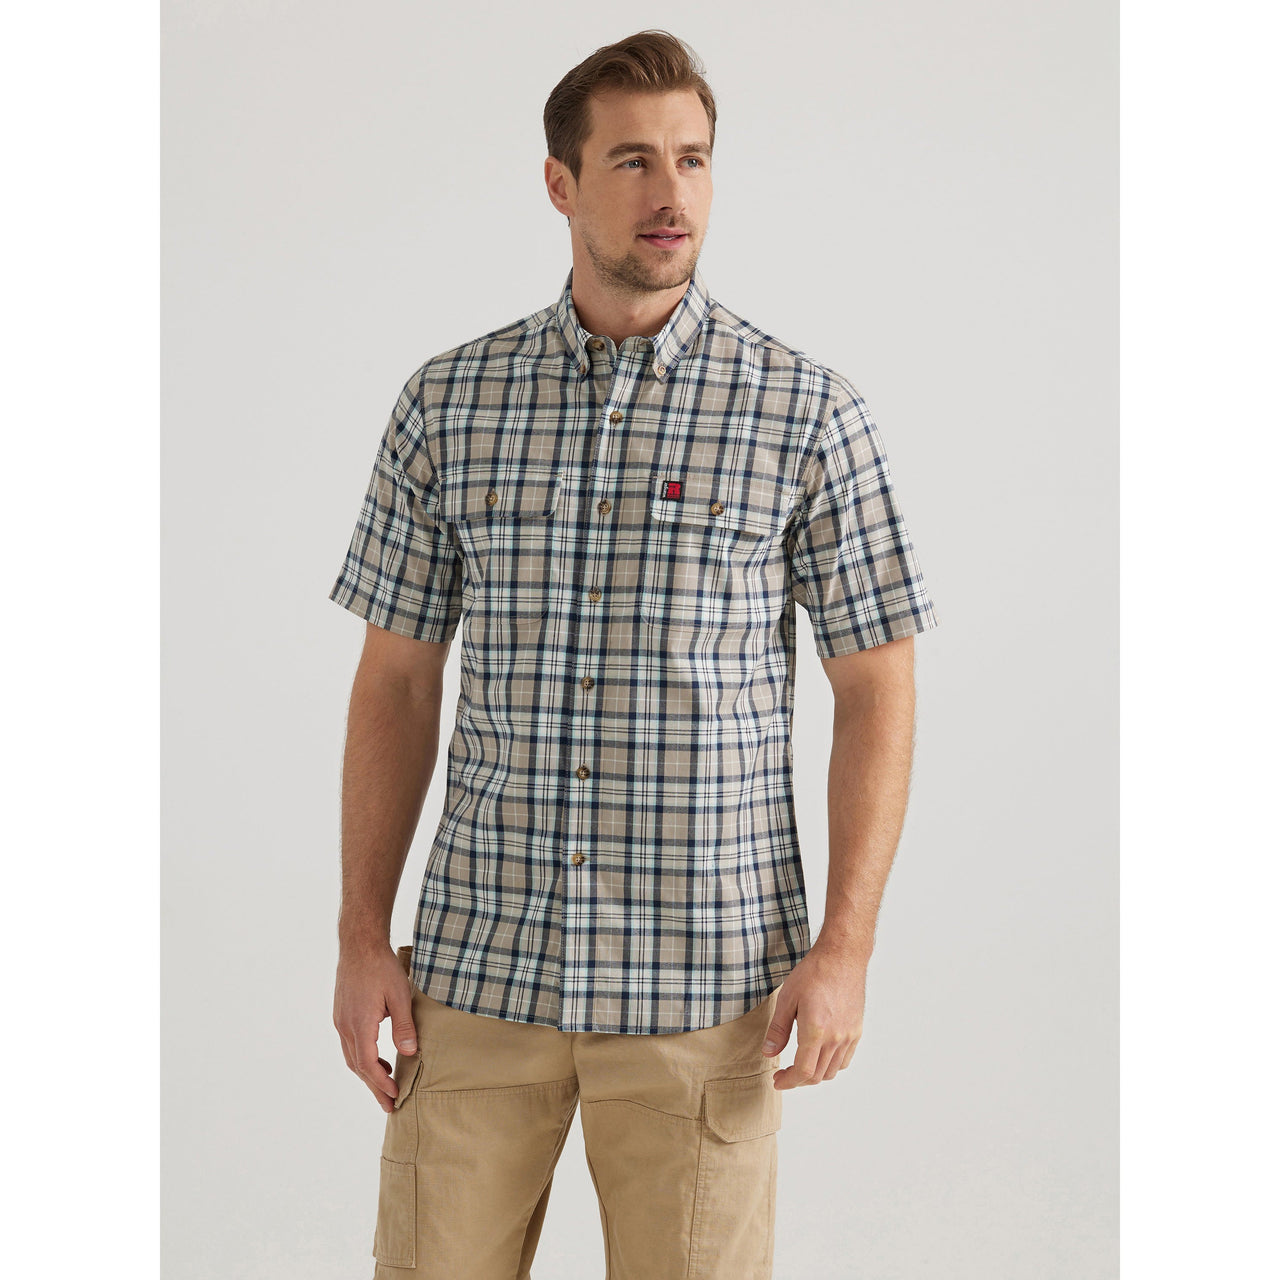 Wrangler Men's Riggs Short Sleeve Foreman Plaid Shirt - Beige